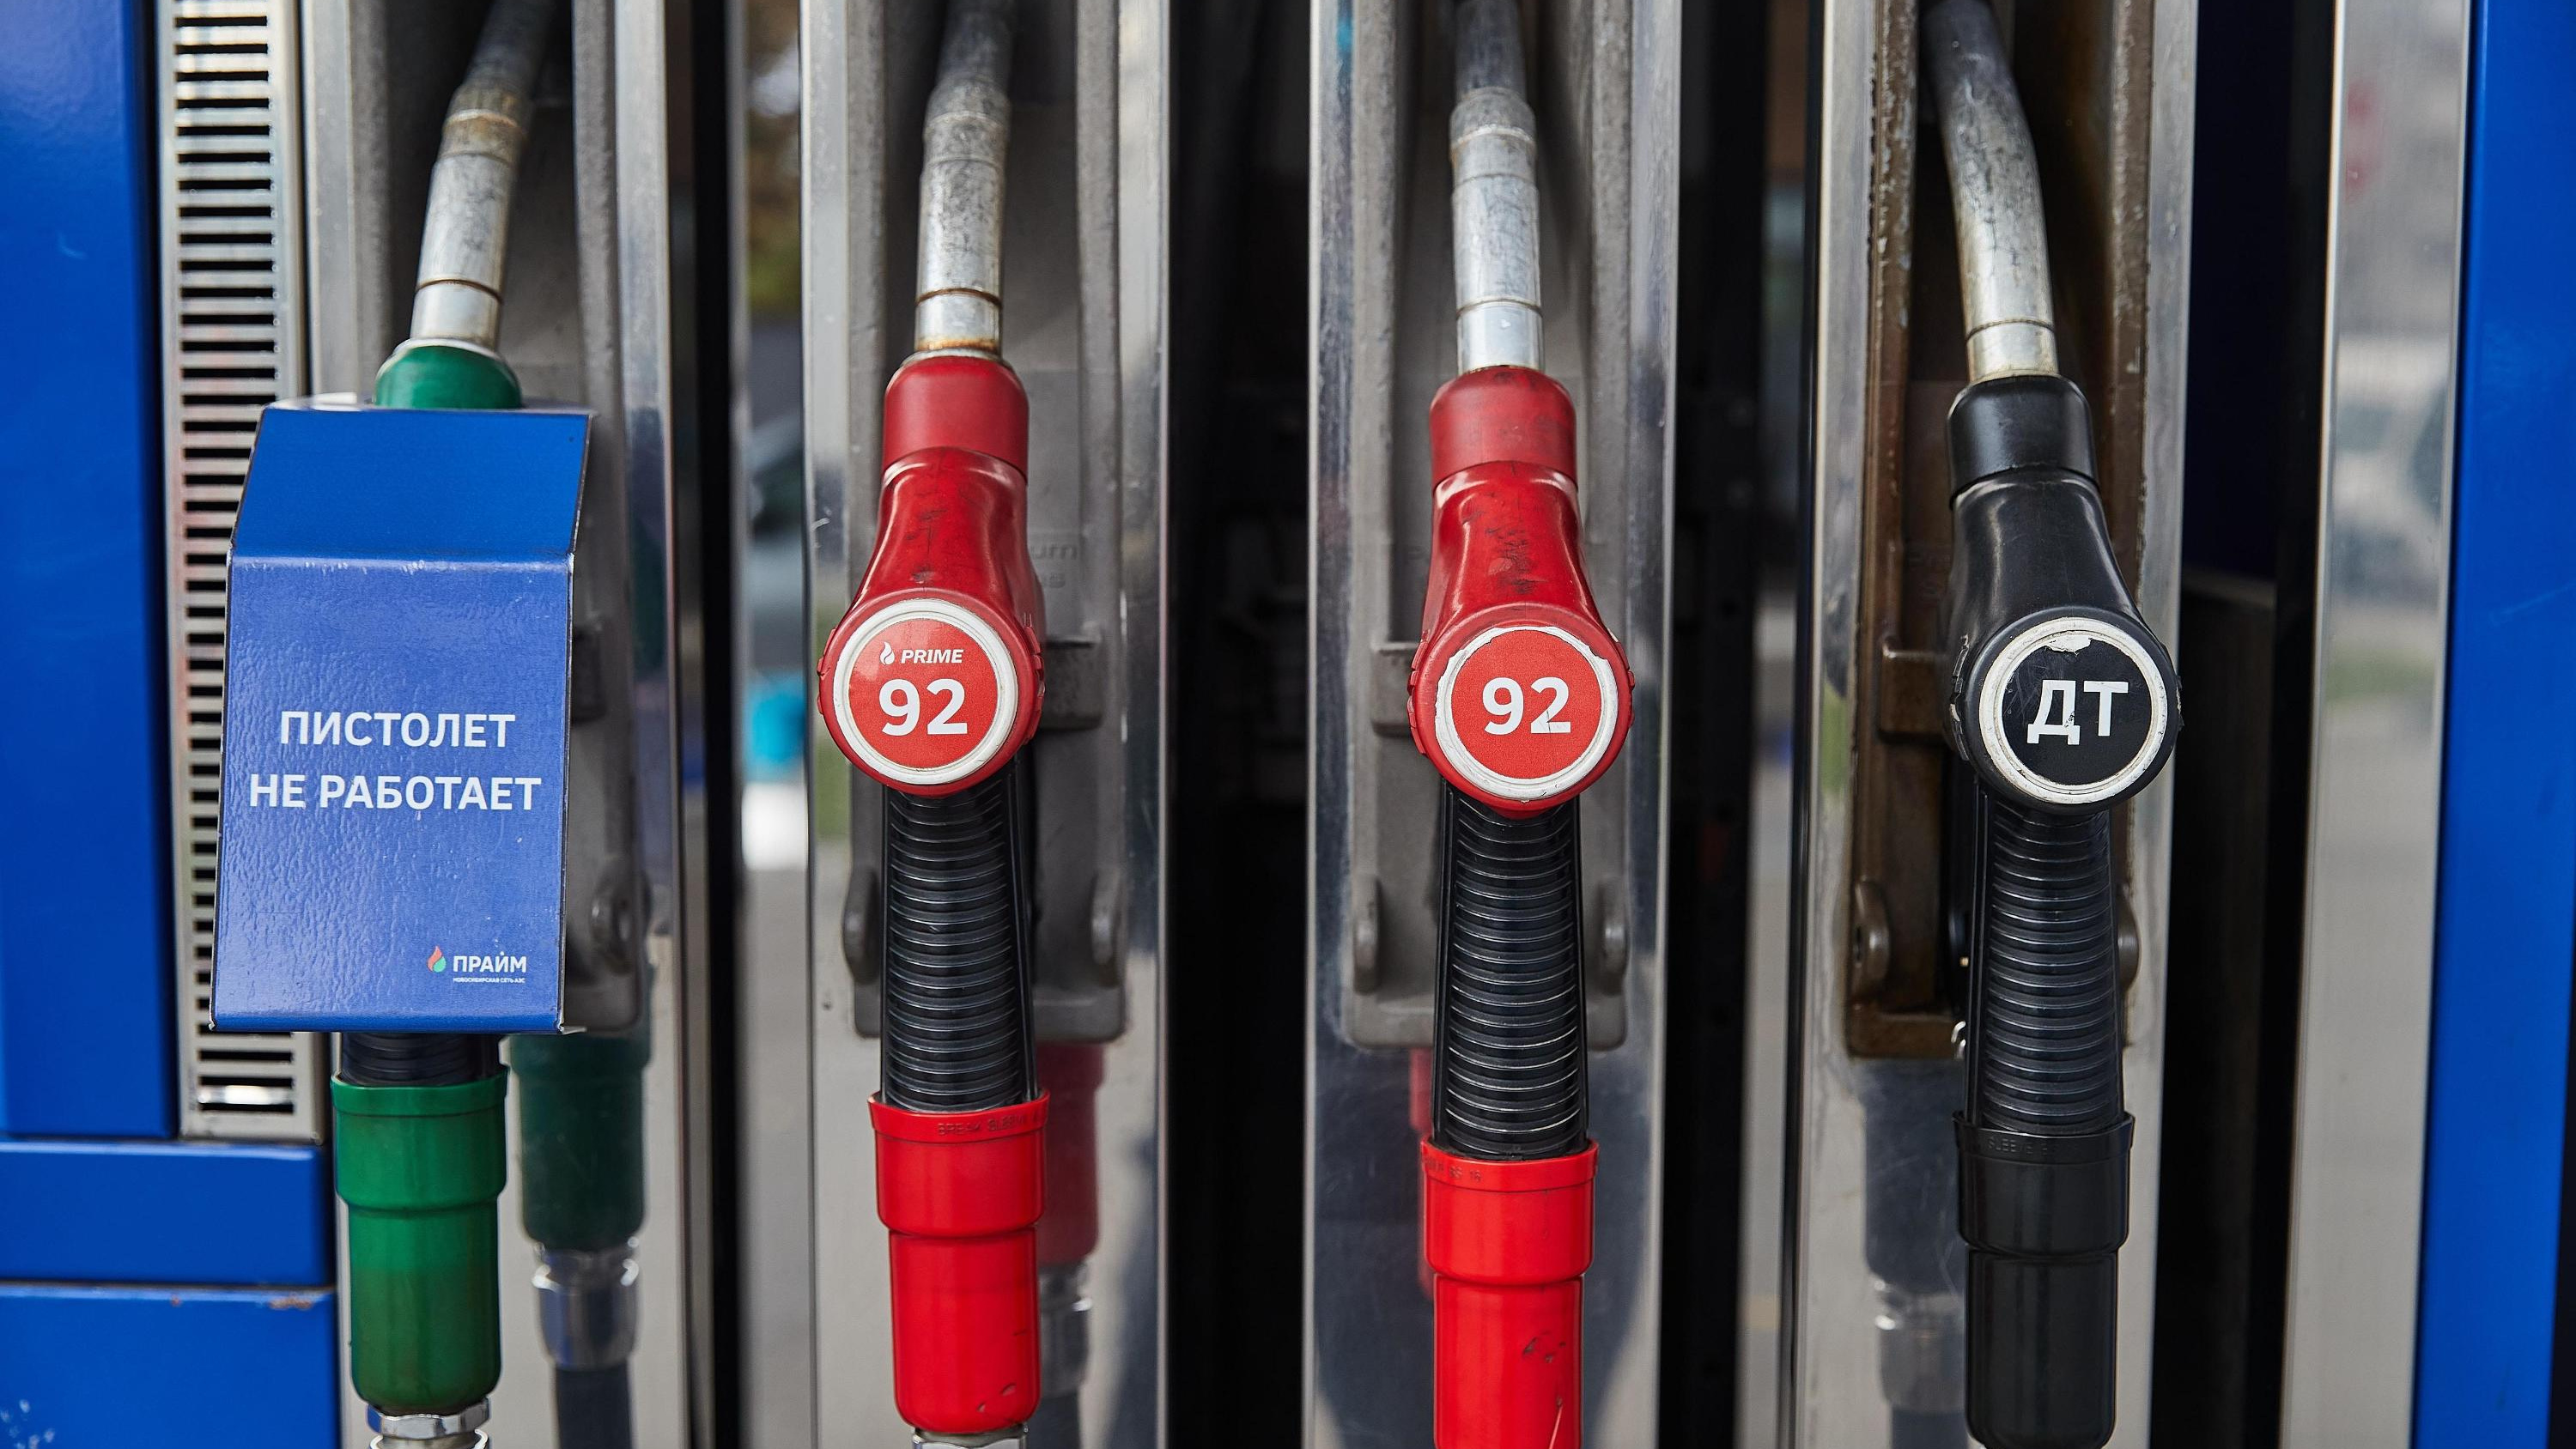 БПЛА vs нефть. Эксперты — о том, стоит ли ждать дефицита топлива и что будет с ценами на него